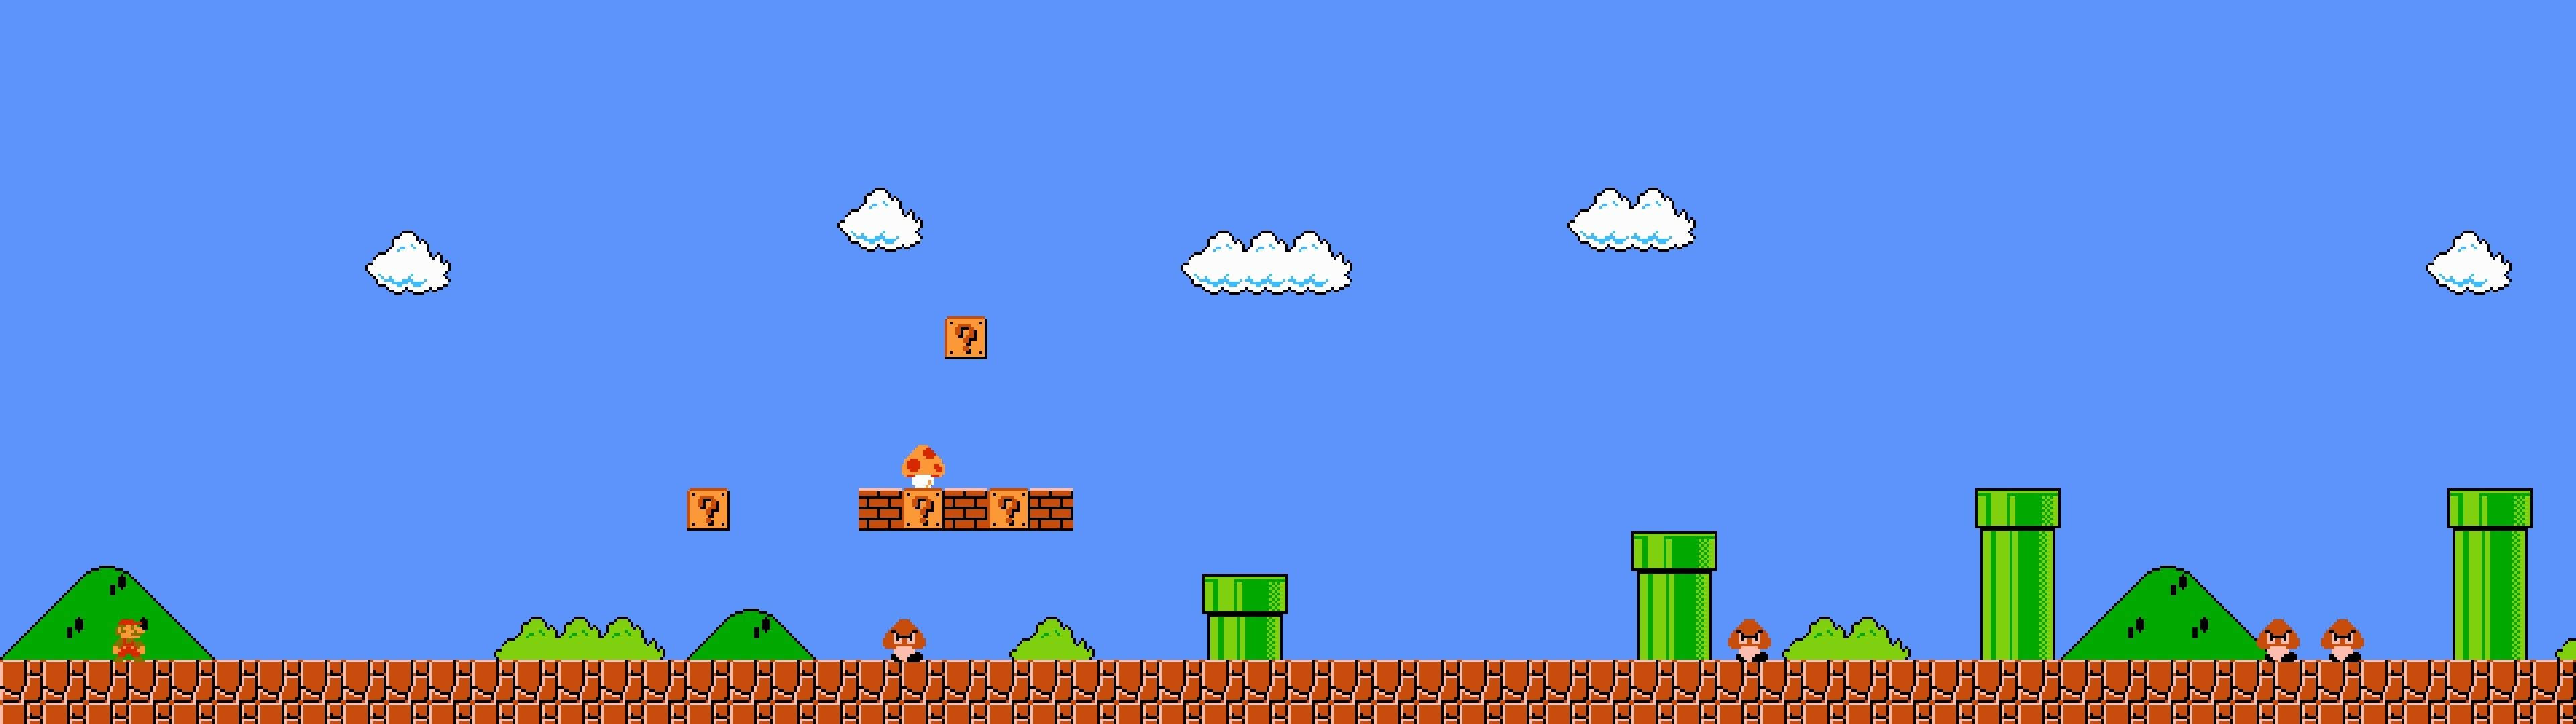 Einsuper Mario Bros Spiel Mit Viel Fallendem Wasser. Wallpaper